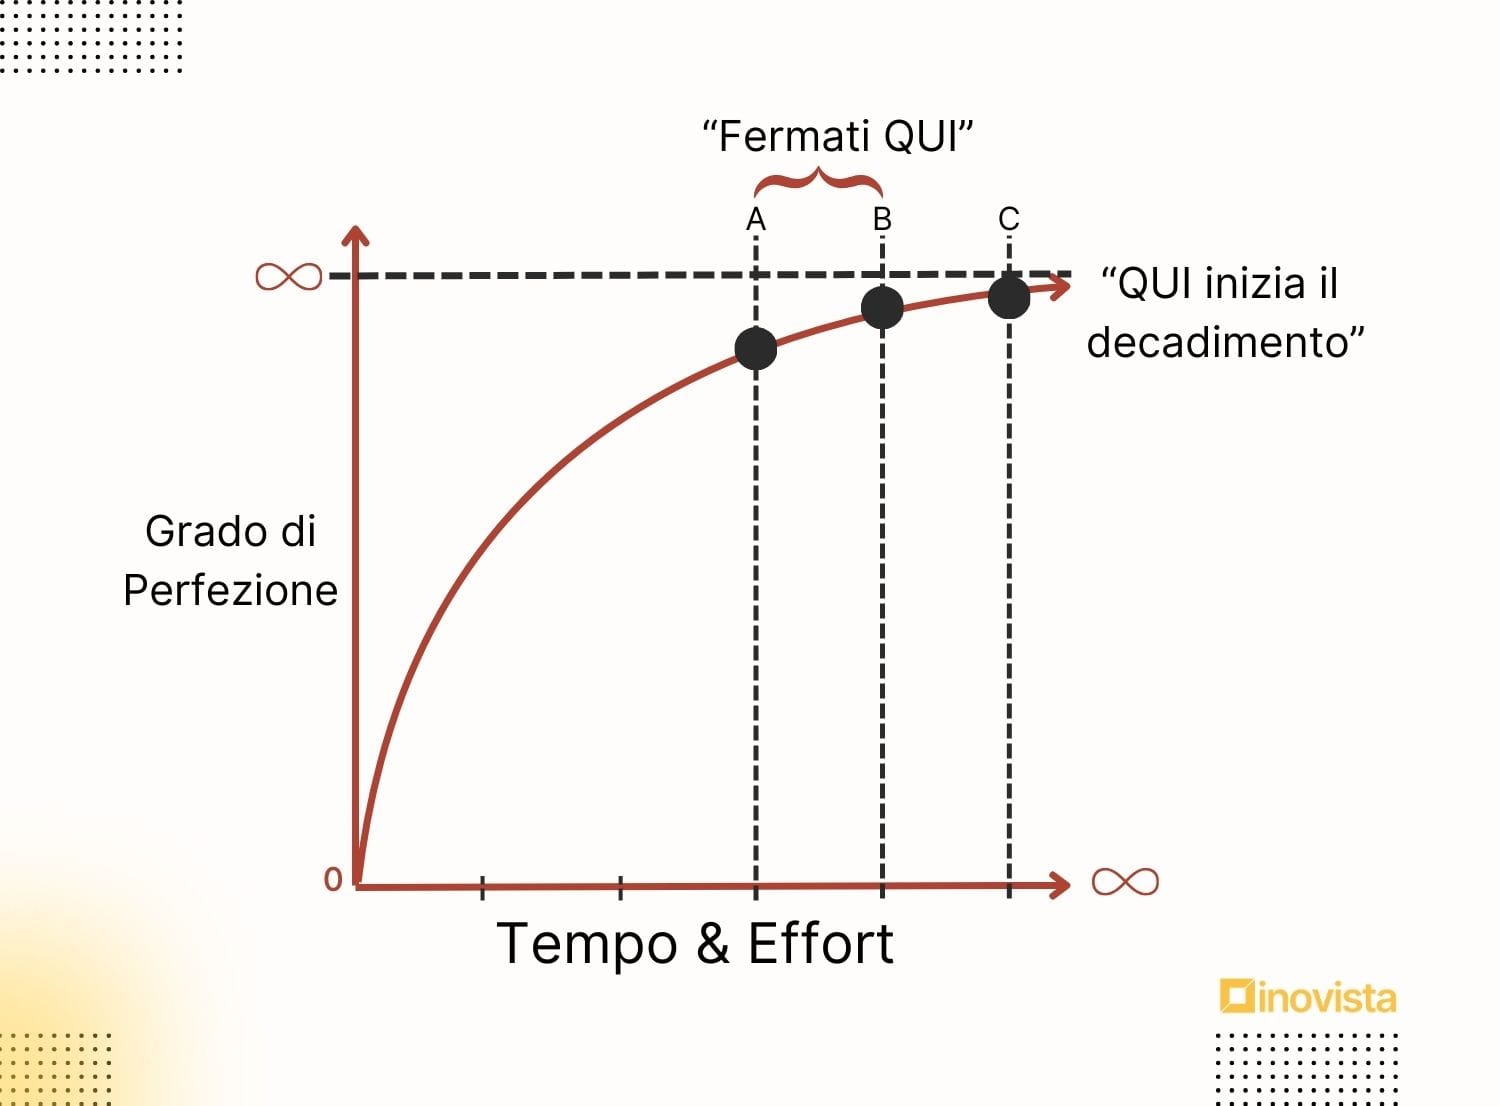 Curva esponenziale dell'eccellenza illustra quando interrompere lo sforzo per ottimizzare successo e output